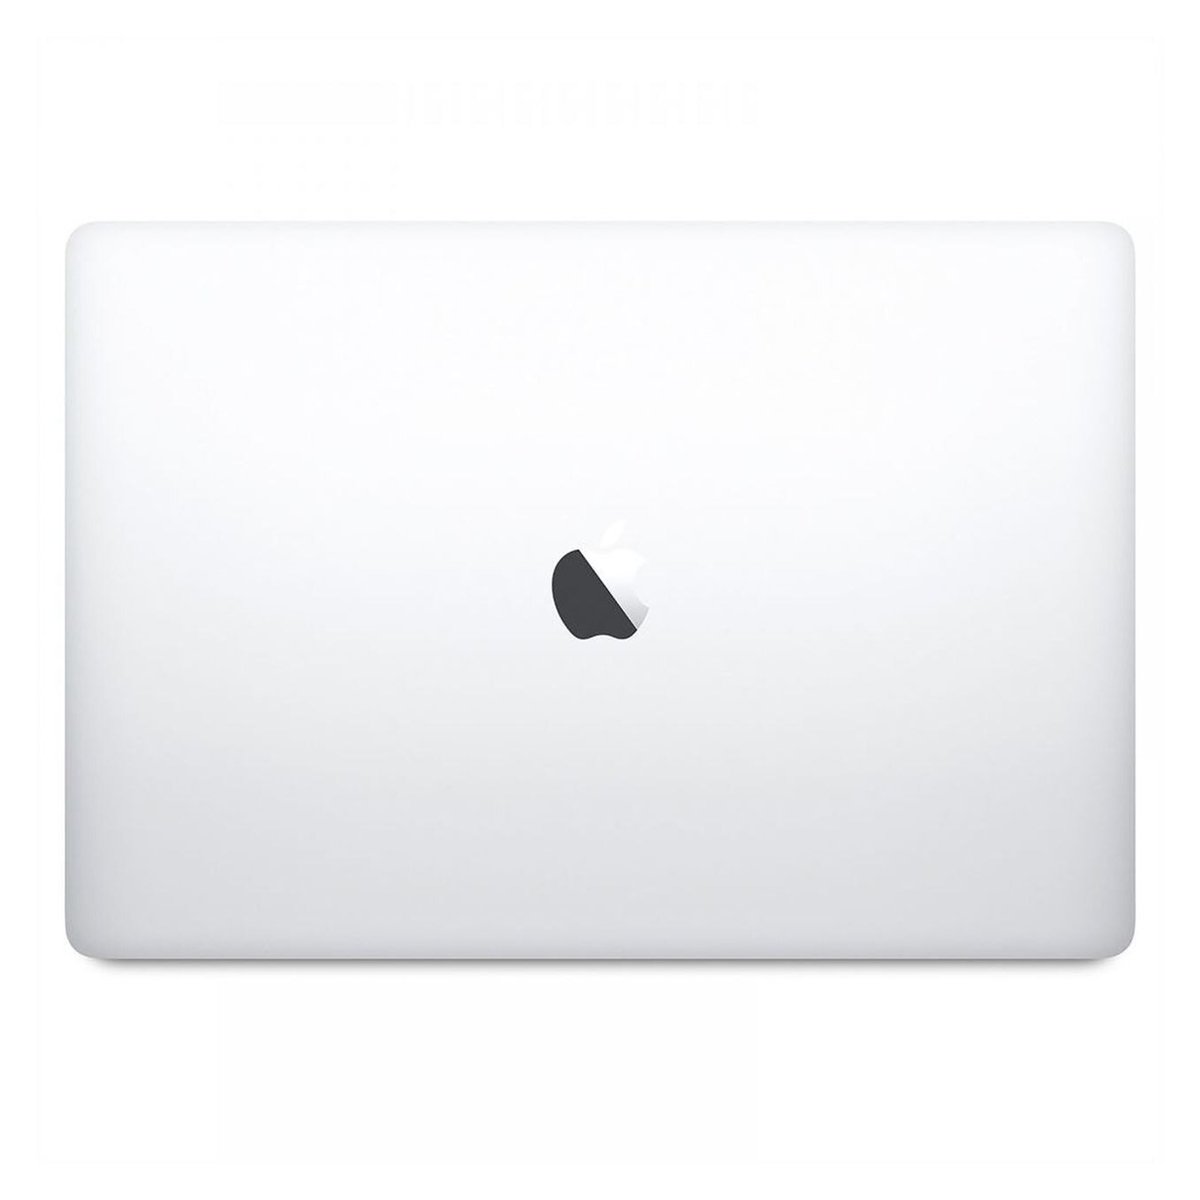 Apple MacBook Pro MR962AB Core i7 Silver